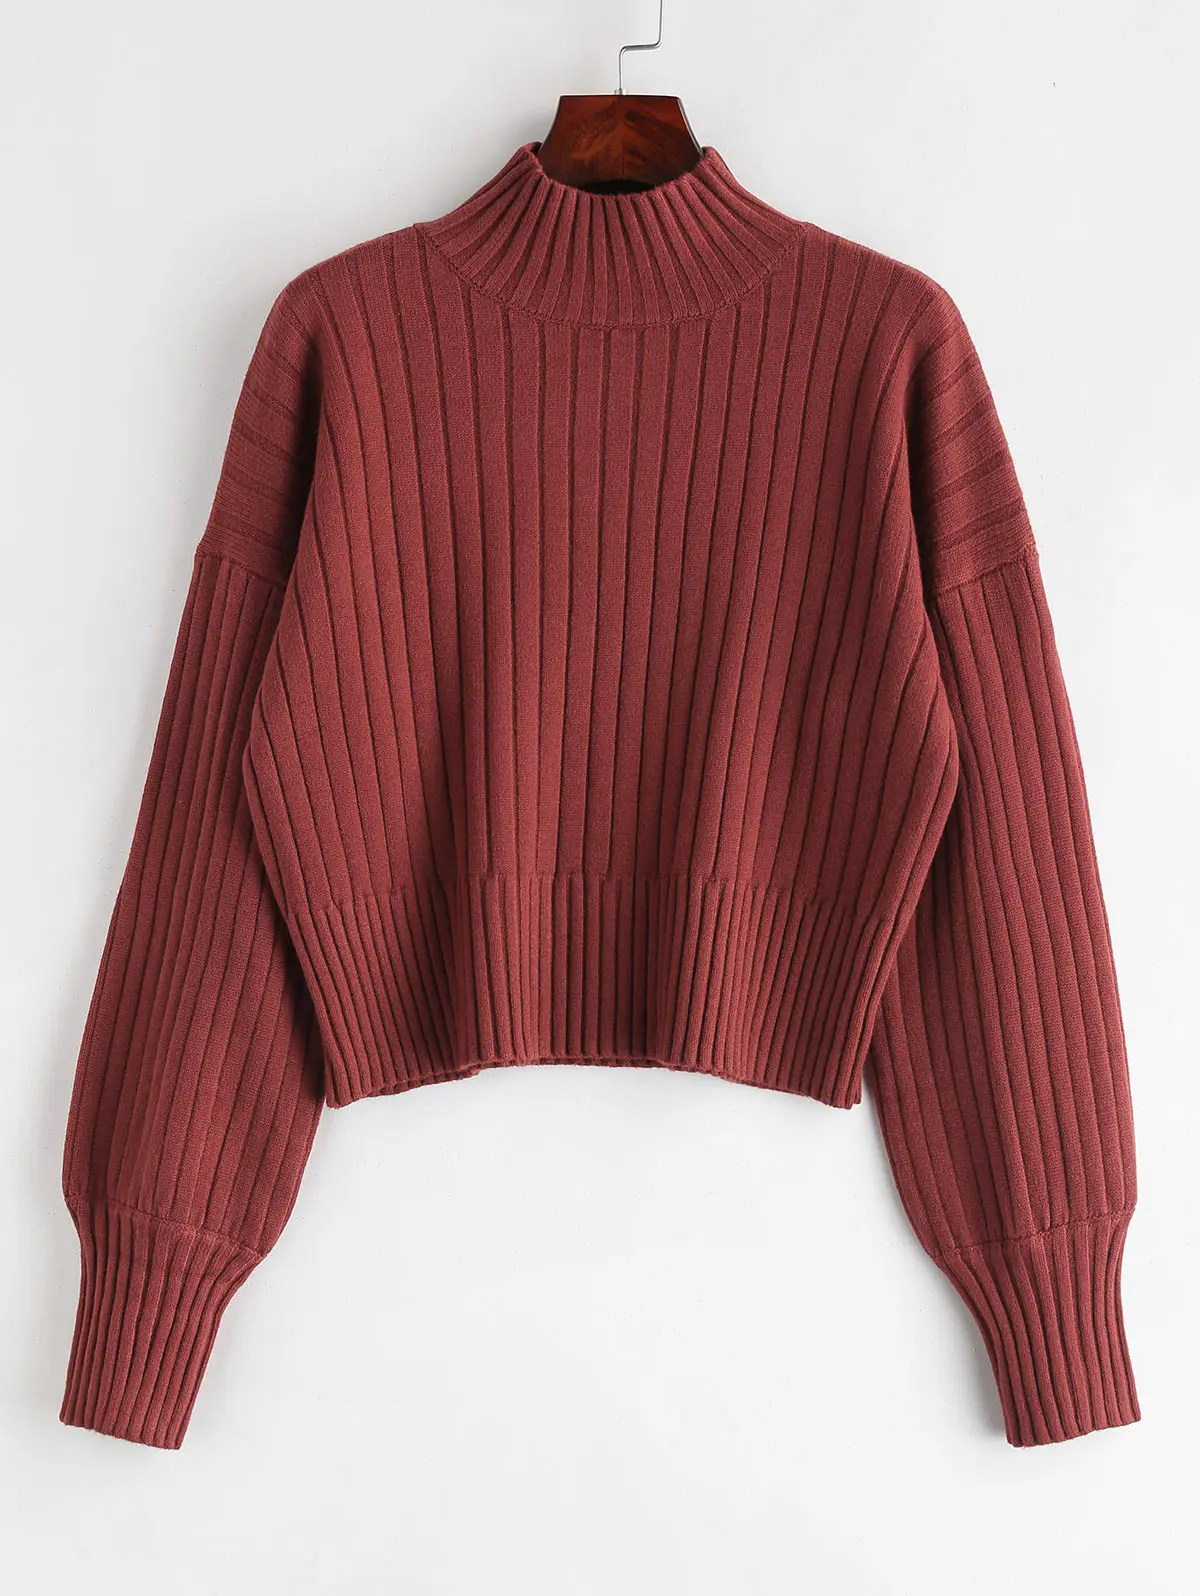 ZAFUL высокое качество толстый теплый зимний женский свитер модный вязаный мягкий пуловер Джемпер осенний женский свитер Топ